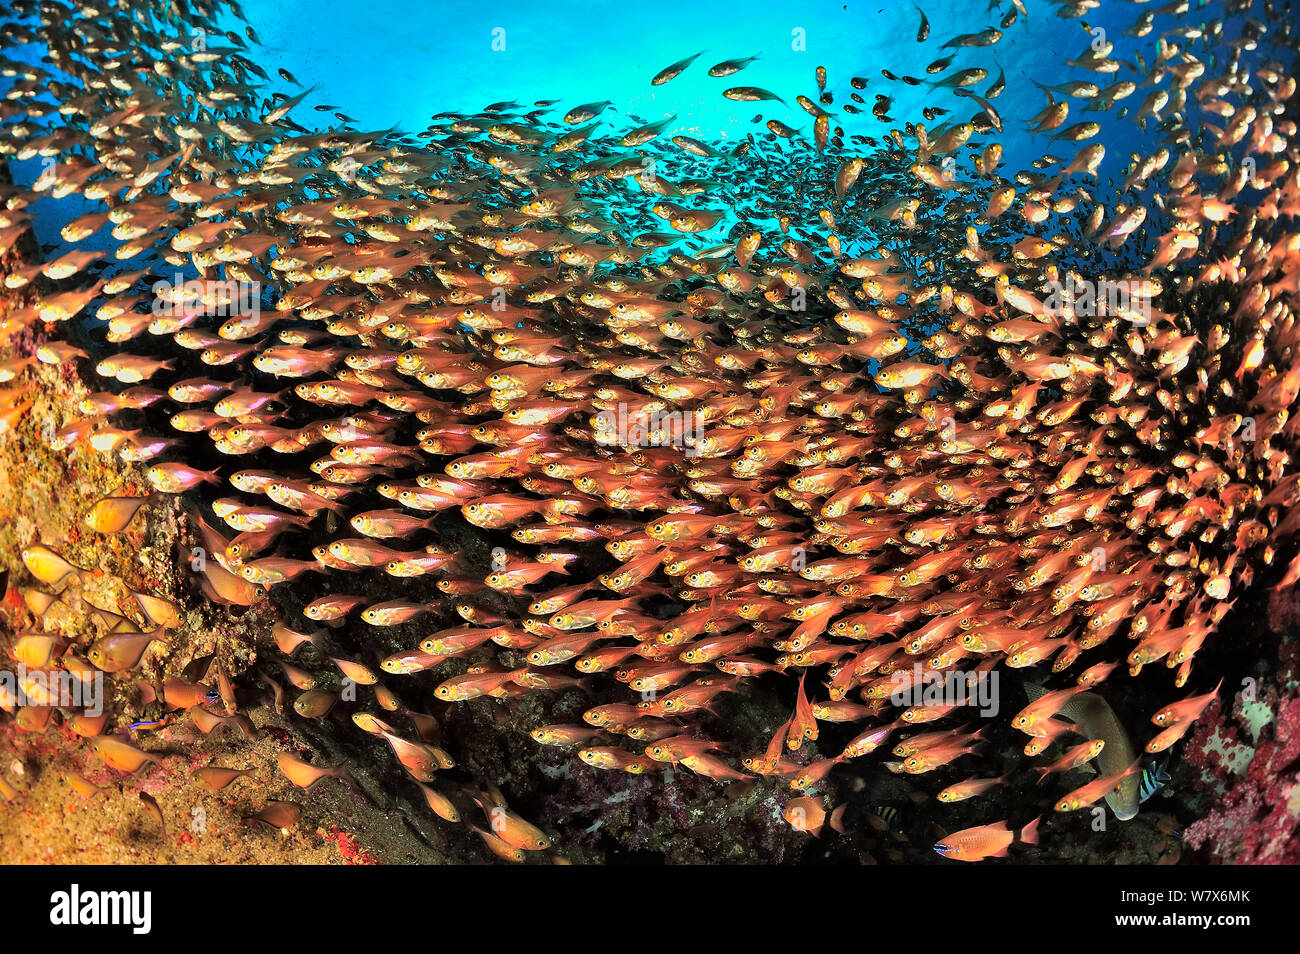 Scuola di spazzatrici giallo / glassfish (Parapriacanthus ransonneti / guentheri) sulla barriera corallina, costa di Dhofar e isole Hallaniyat, Oman. Mare Arabico. Foto Stock